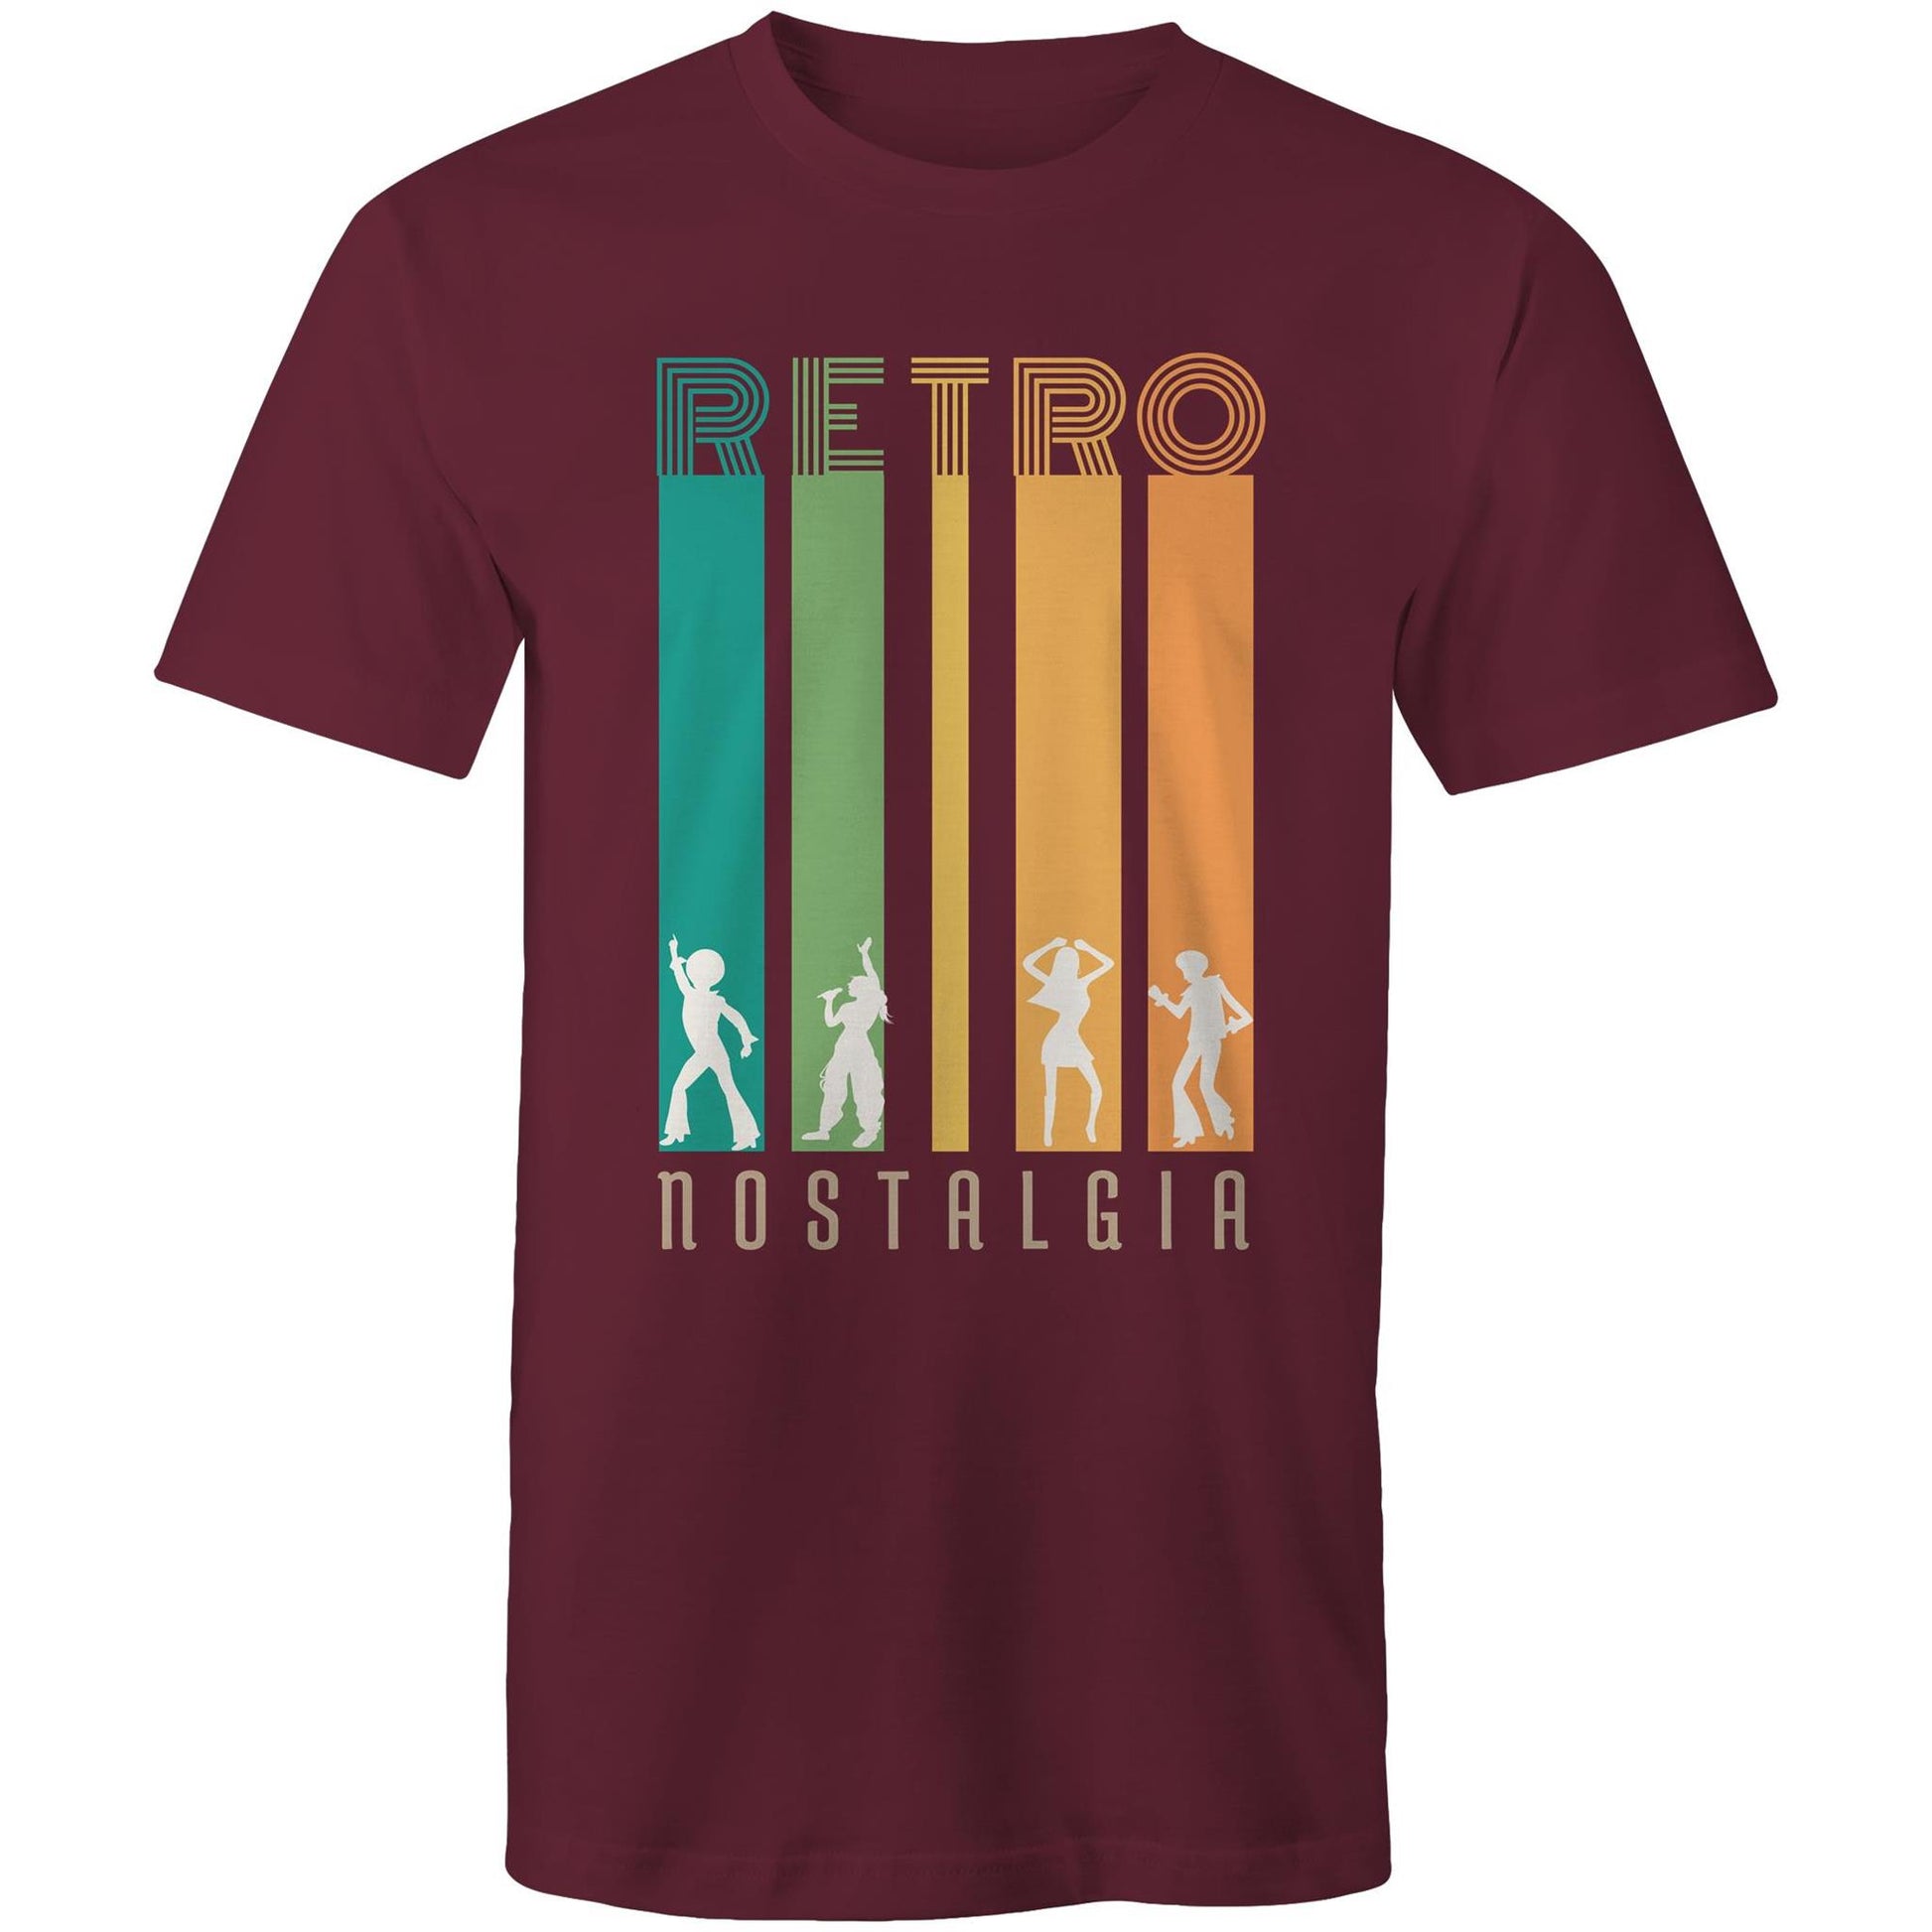 Retro Nostalgia - Mens T-Shirt Burgundy Mens T-shirt Retro